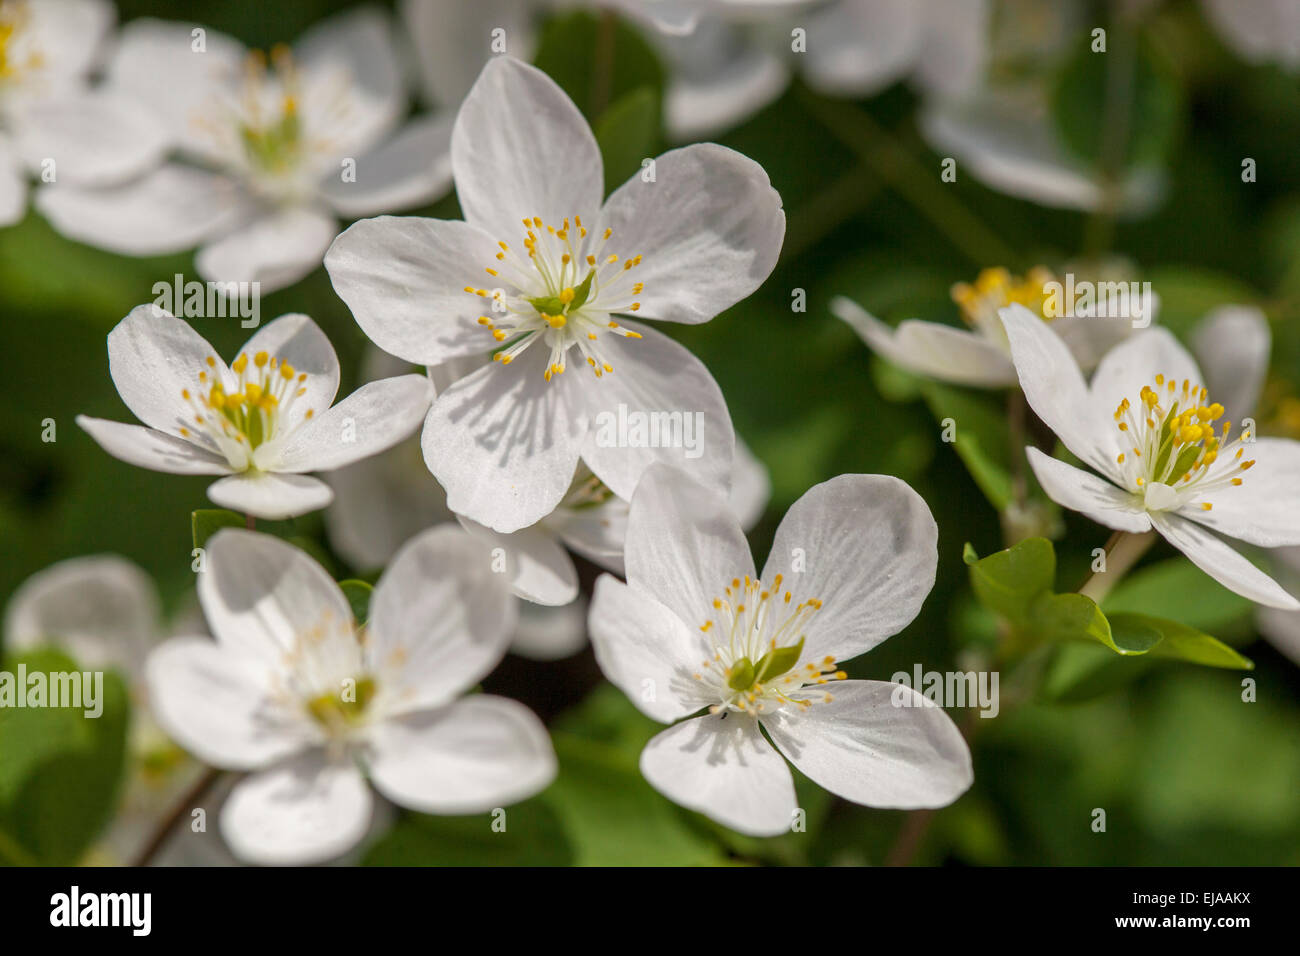 False rue anemone Isopyrum thalictroides flower Stock Photo